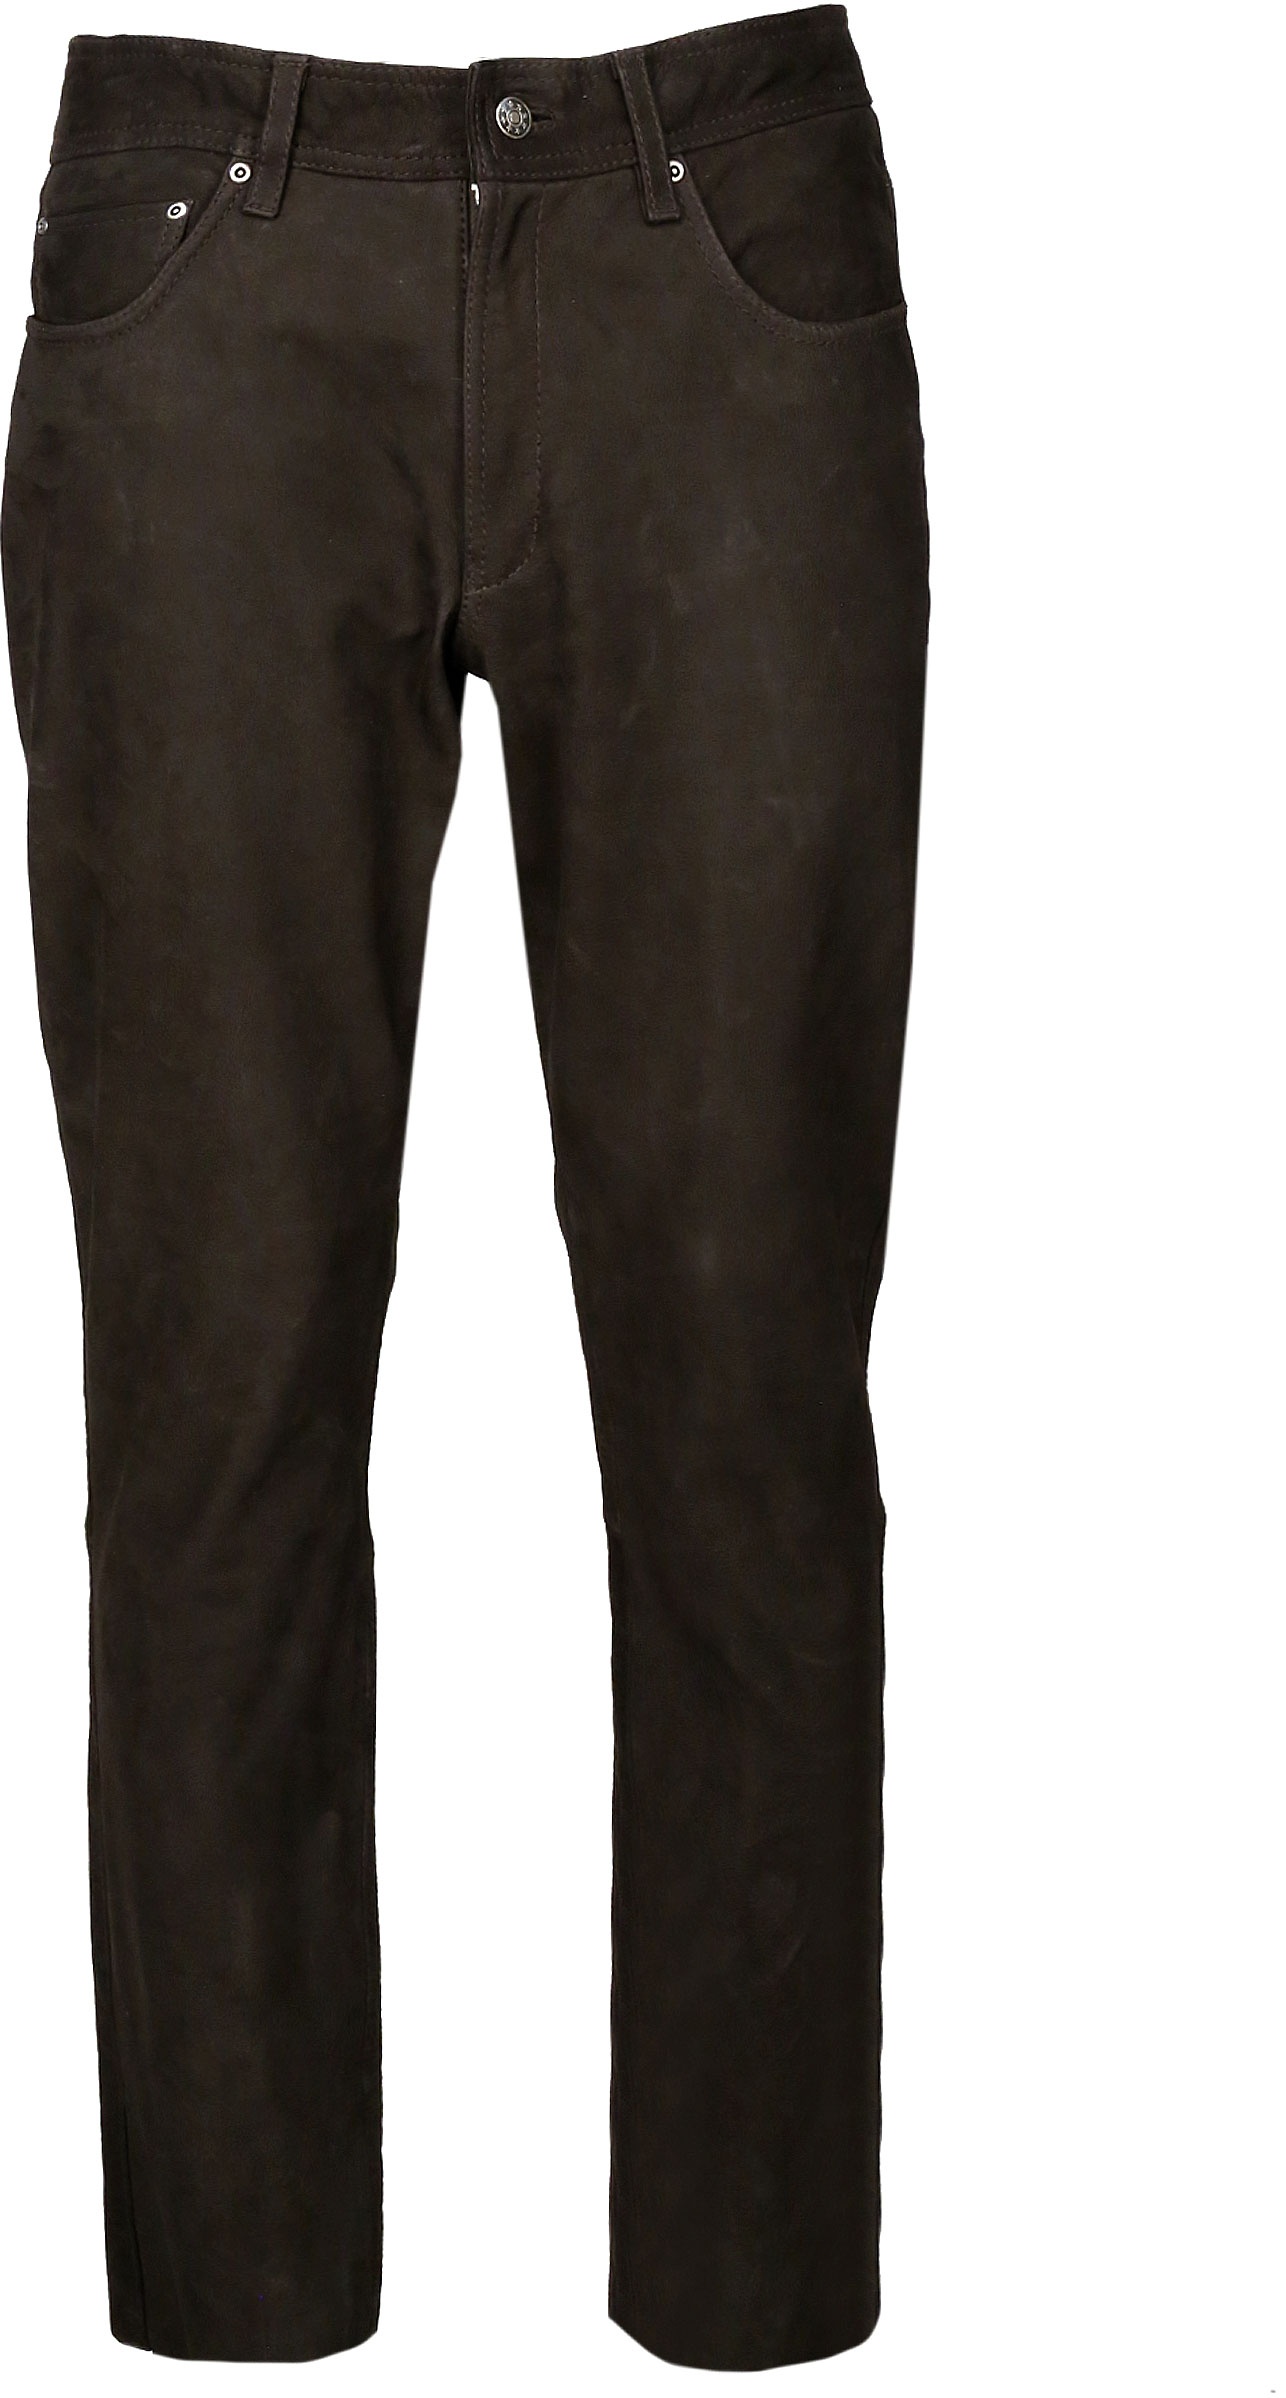 JCC Phill, pantalon en cuir - Marron Foncé - 52